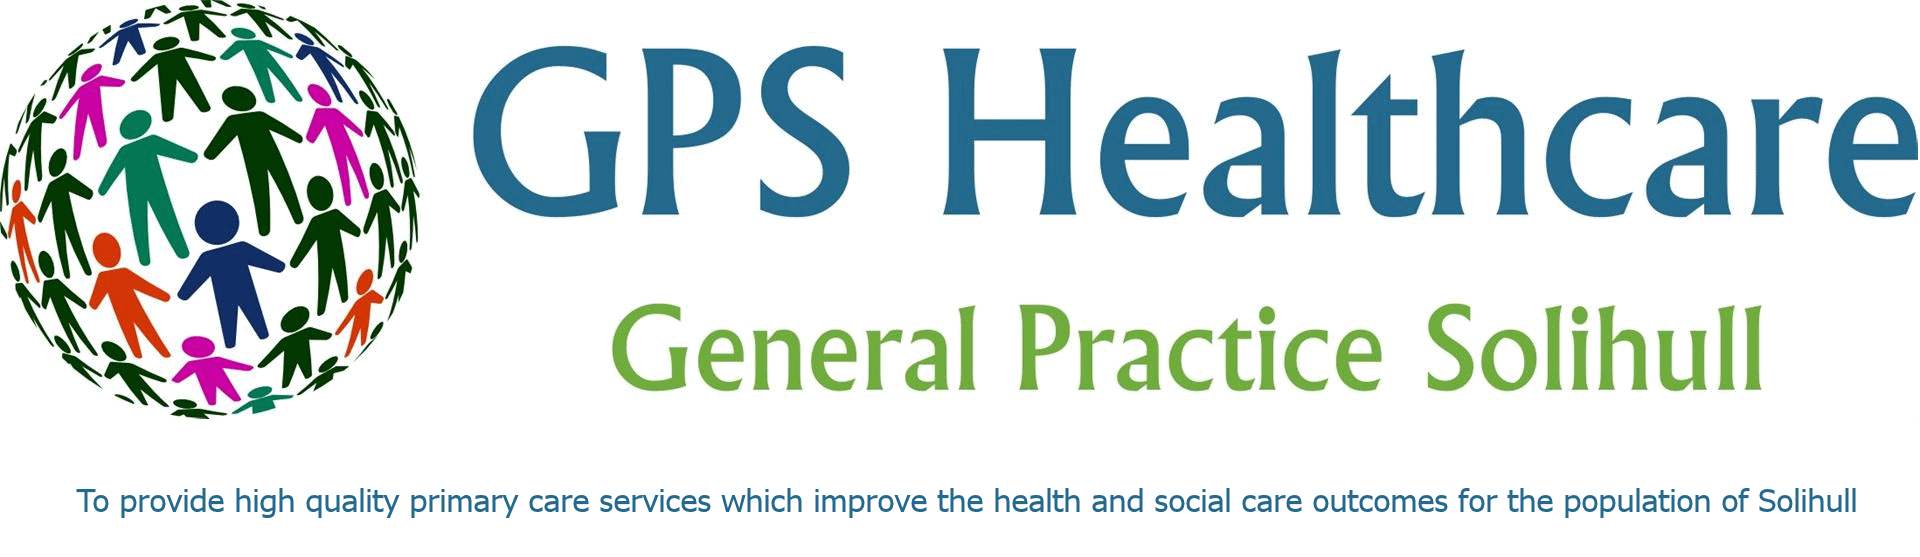 GPS Healthcare Logo